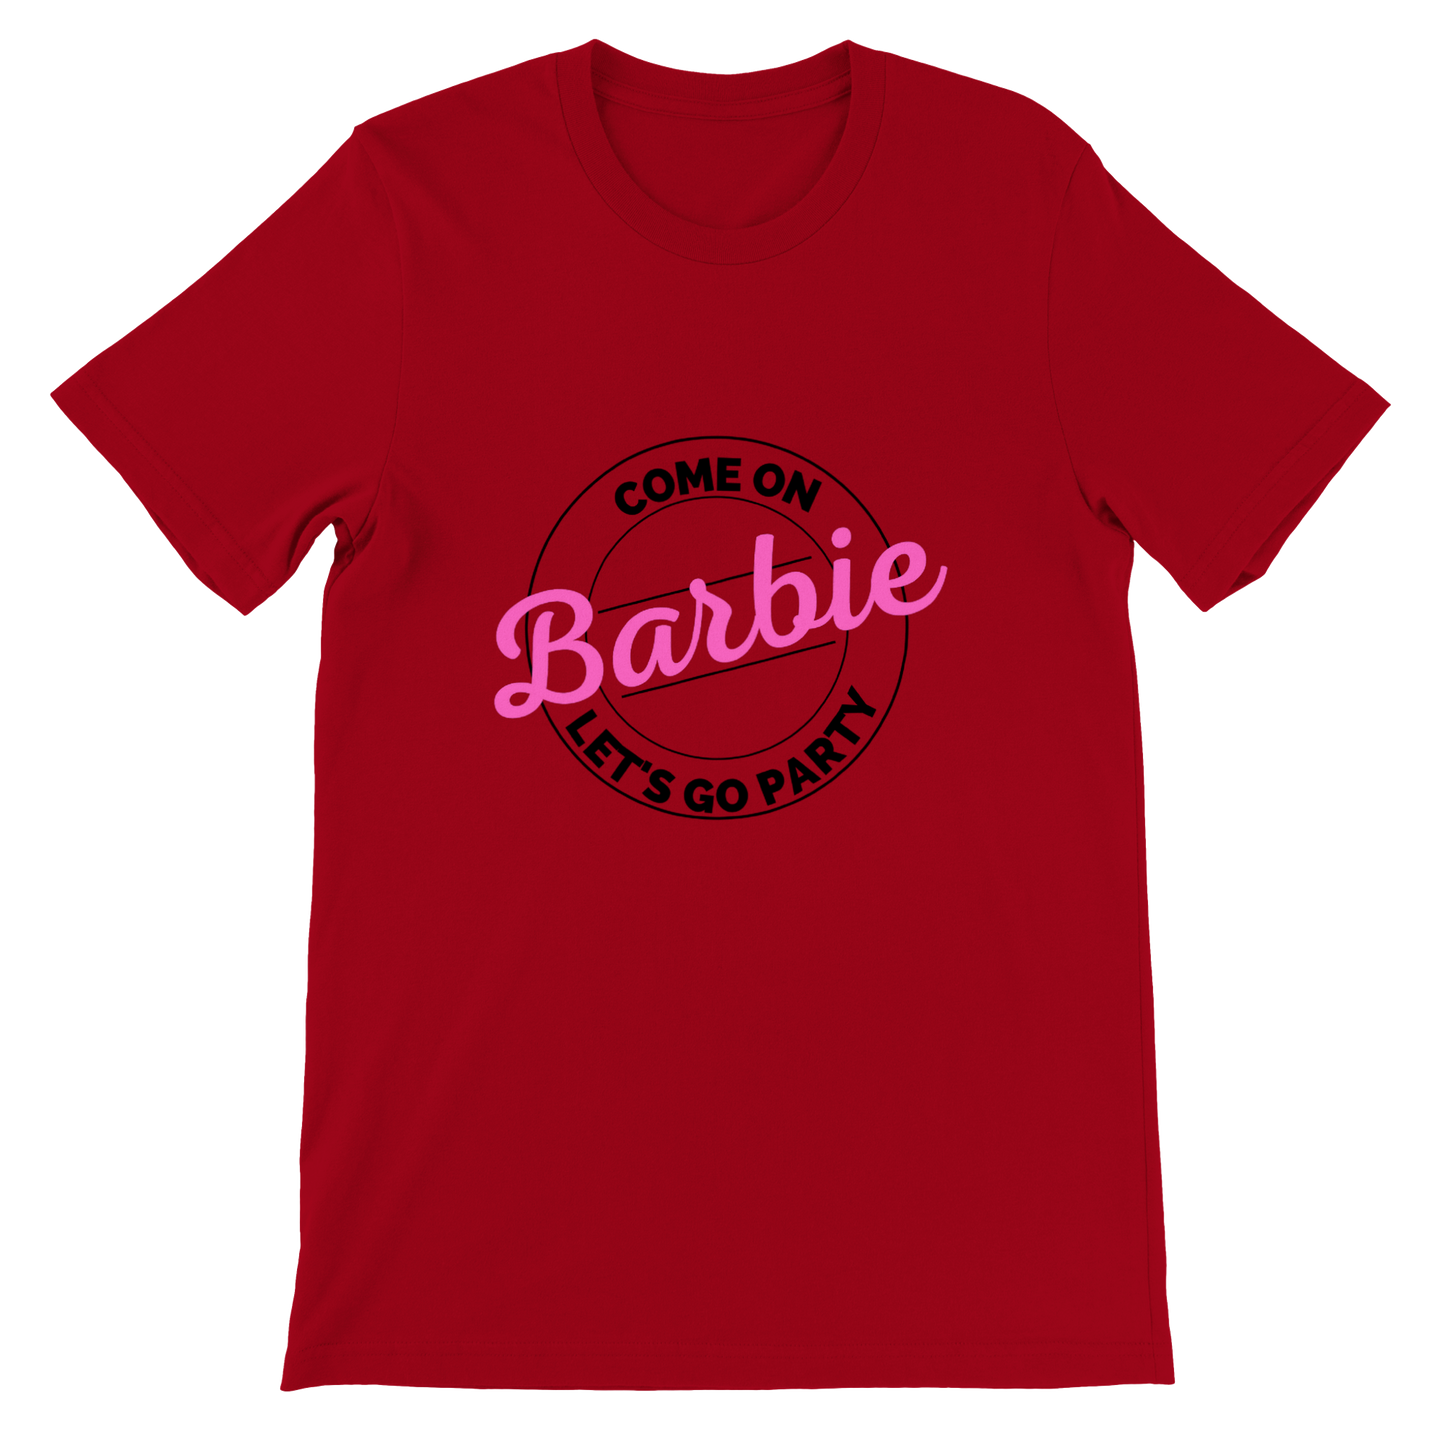 Cmon Barbie Lets Go Party Come on Barbie - Premium Unisex Crewneck T-shirt